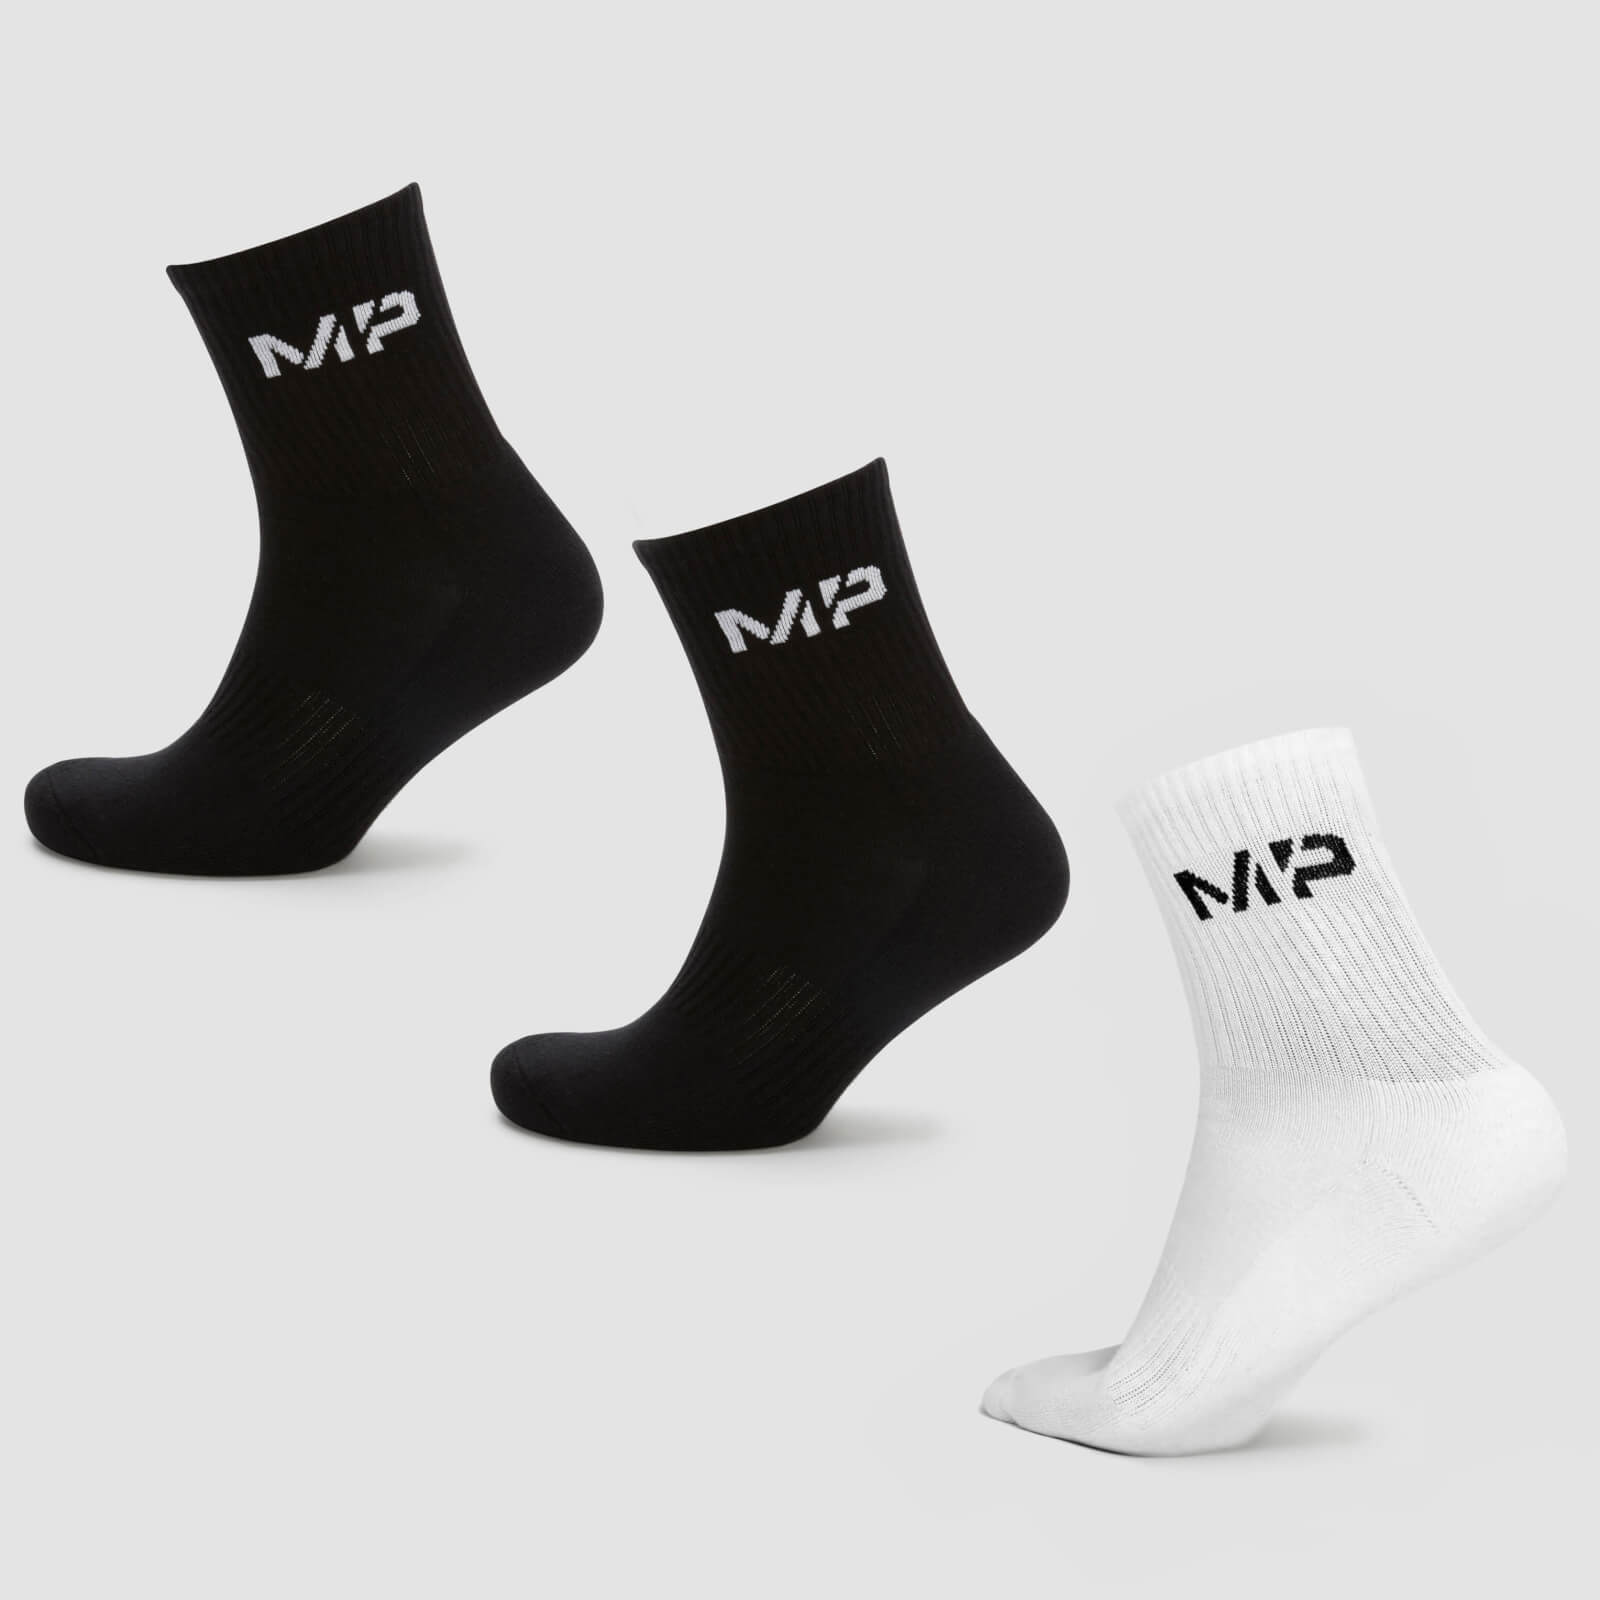 MP Men's Crew Socks - Black/White (3 Pack) - UK 9-12